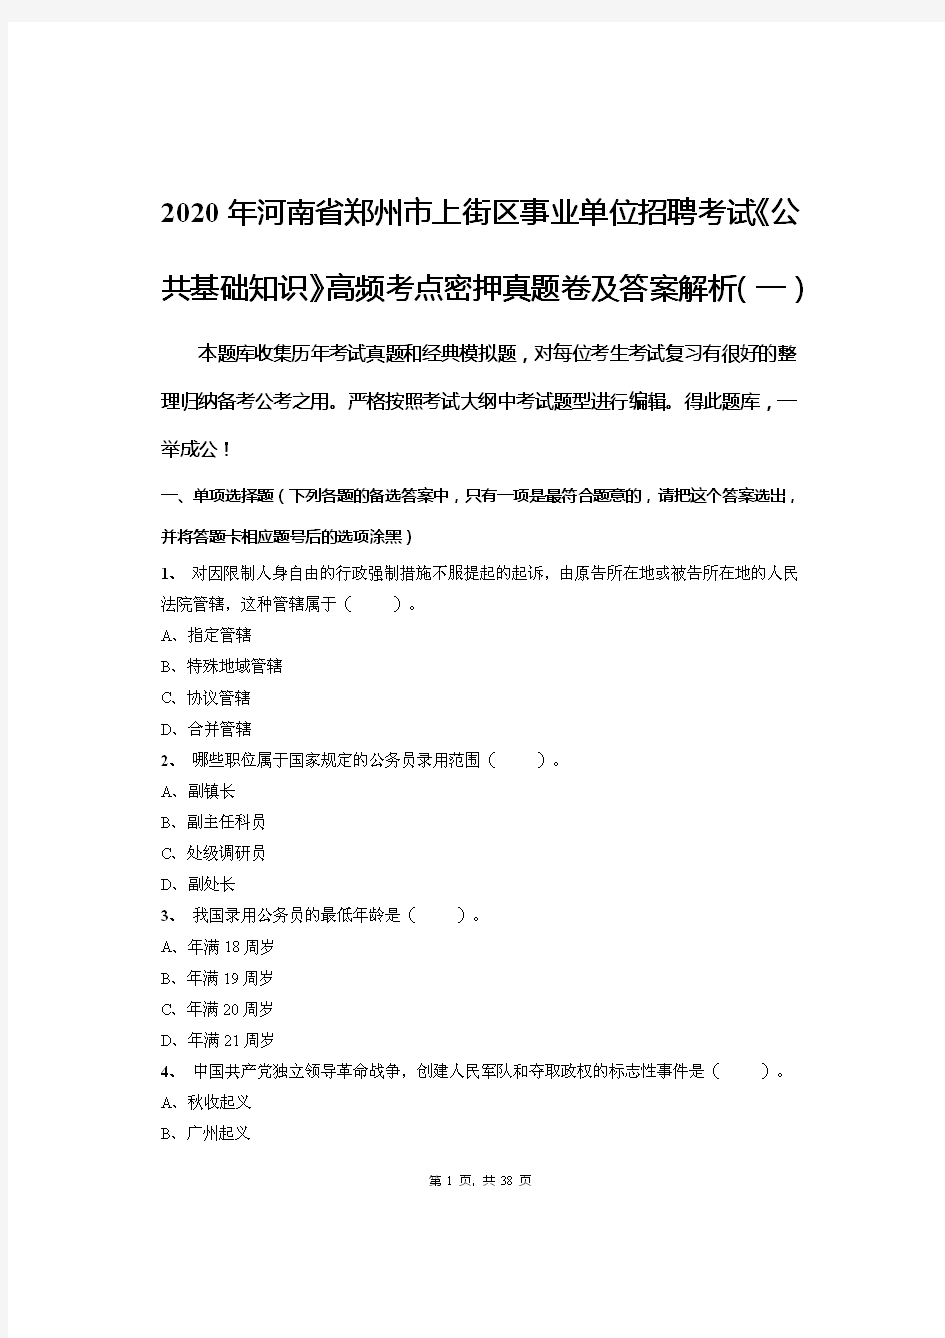 2020年河南省郑州市上街区事业单位招聘考试《公共基础知识》高频考点密押真题卷及答案解析(一)